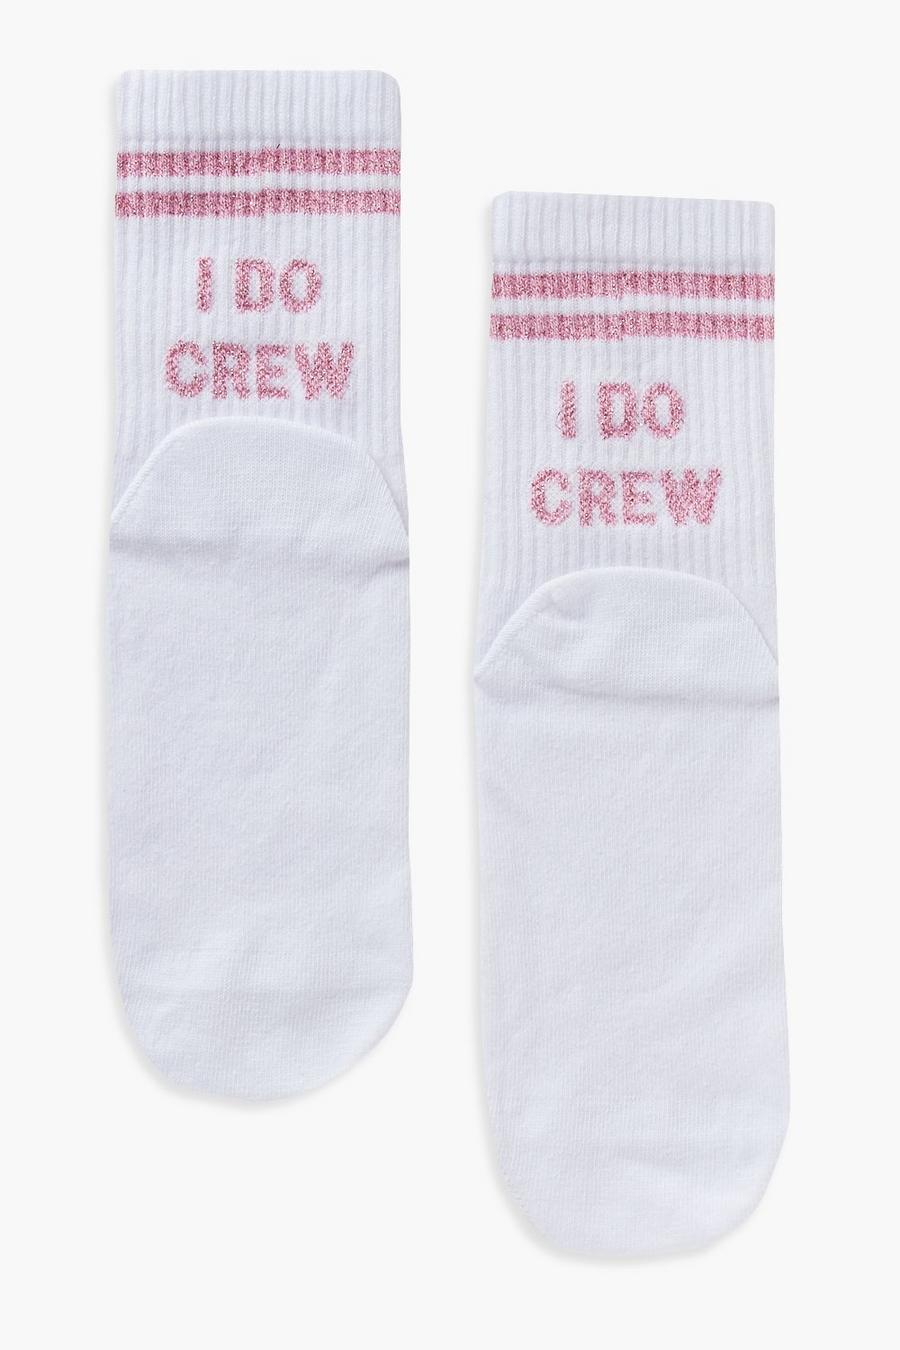 Socken mit I Do Crew Slogan, Weiß blanc